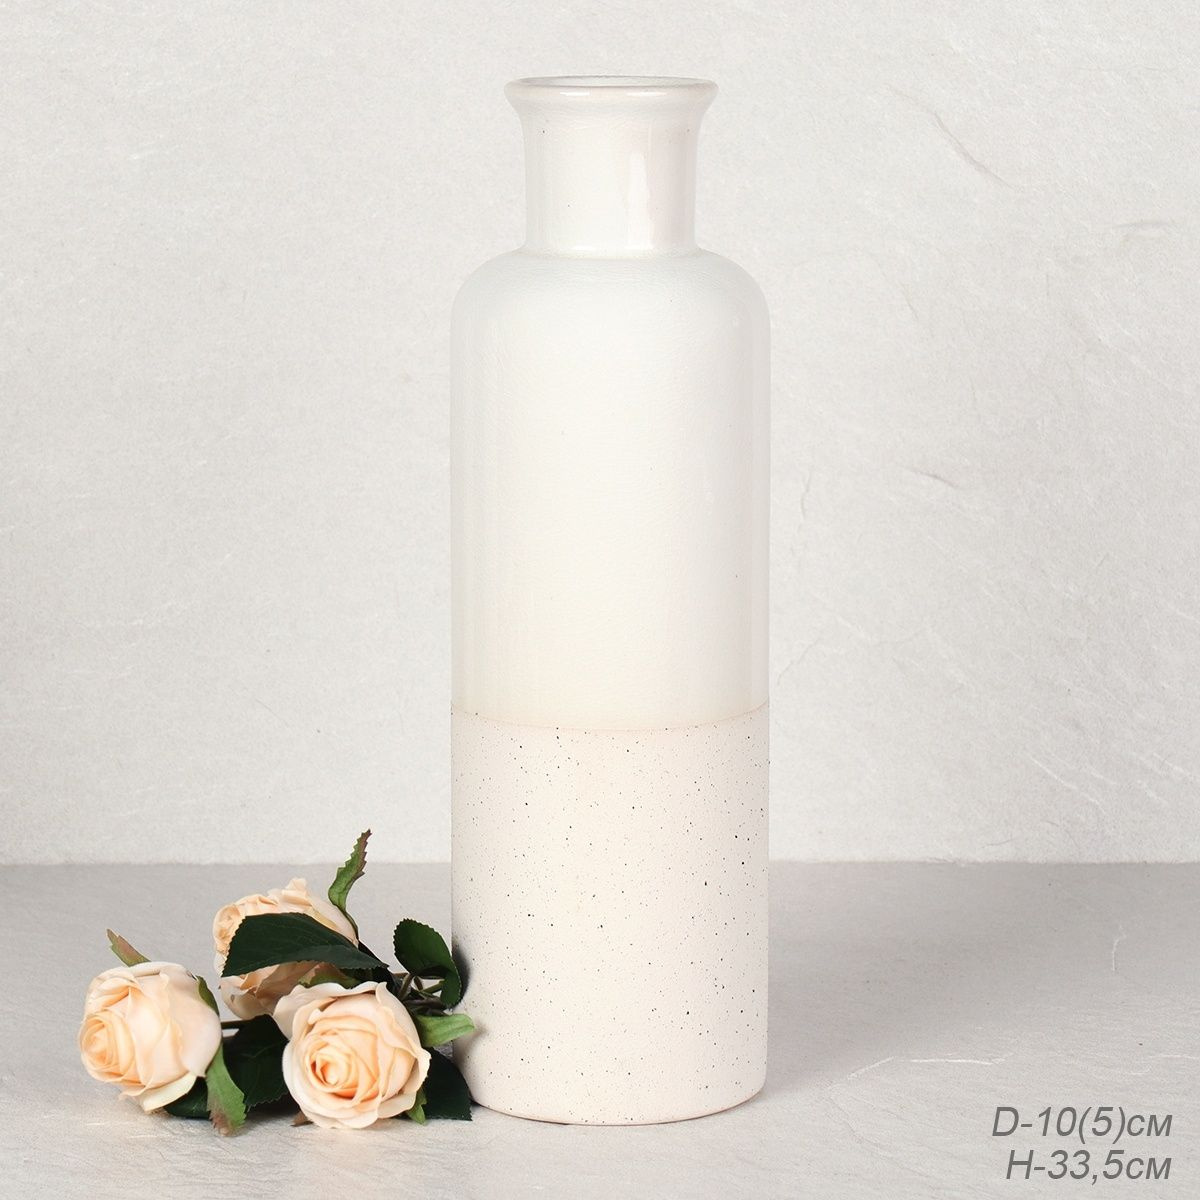 ваза для цветов; ваза для сухоцветов; ваза для декора; вазы для цветов; вазы для декора; вазы для интерьера; ваза для цветов керамическая; ваза для сухоцветов белая; ваза для цветов белая